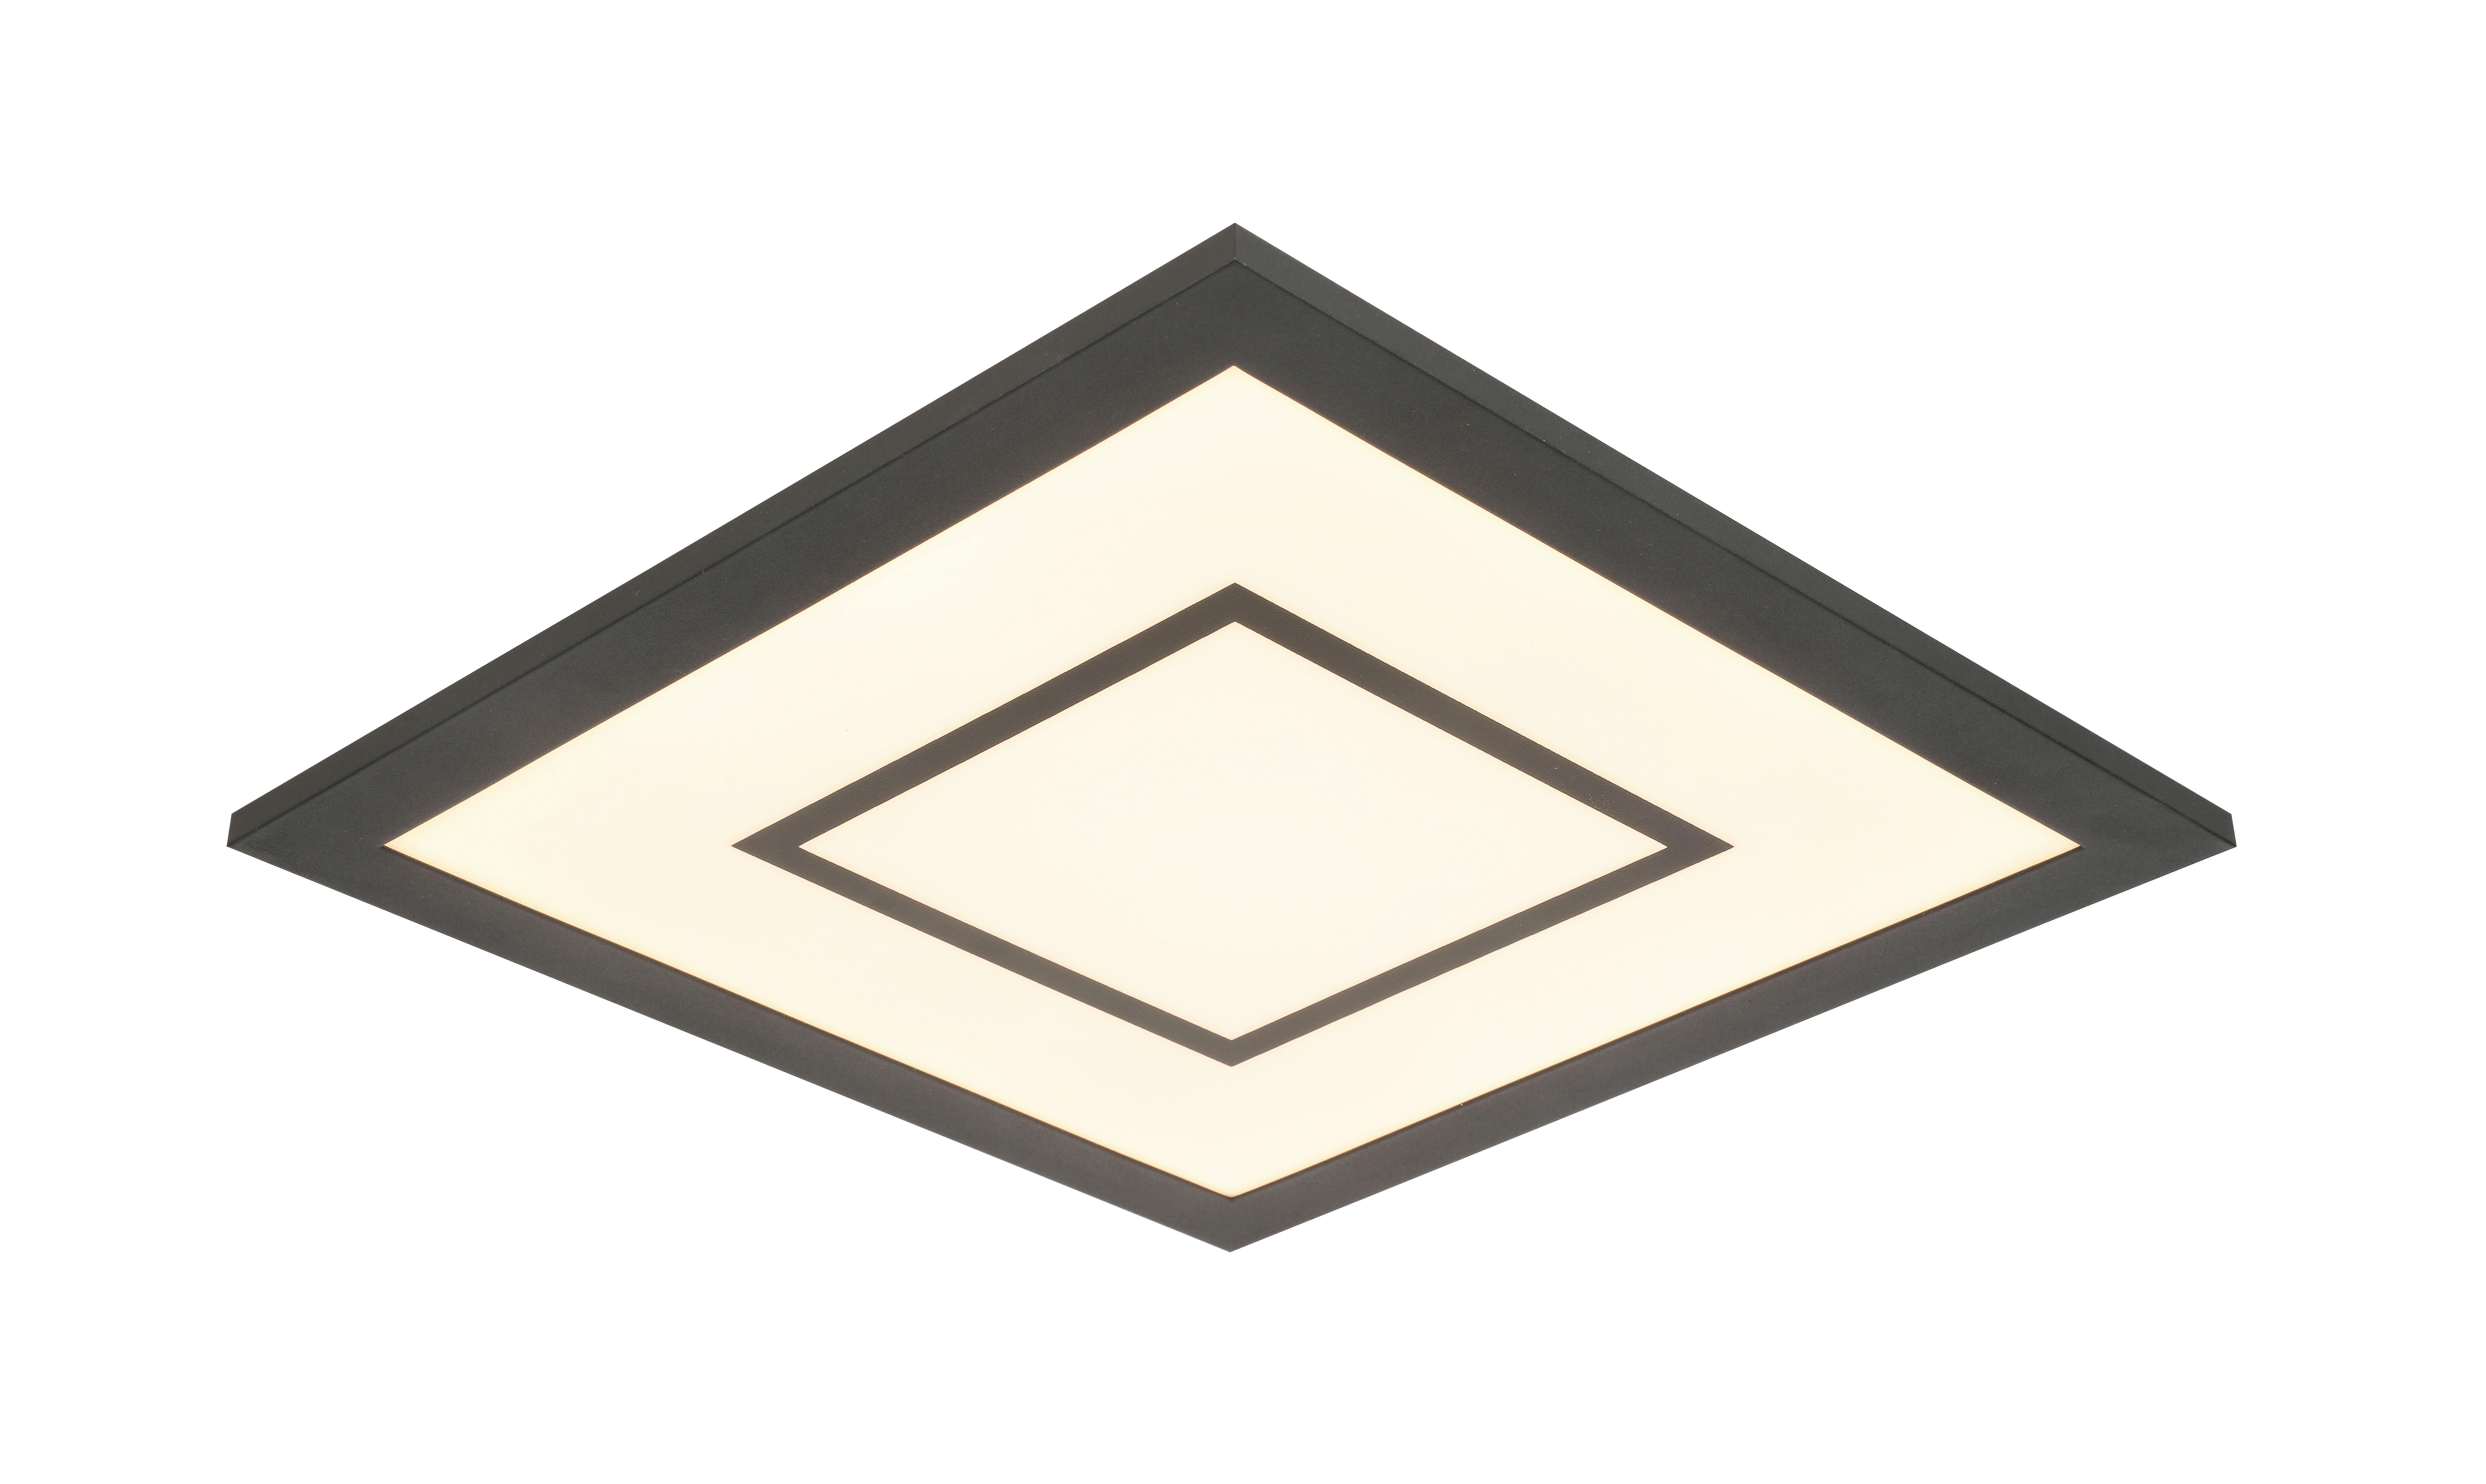 LED-Deckenleuchte Prem in Schwarz max. 12 Watt - Schwarz, MODERN, Kunststoff/Metall (30/30/5,5cm) - Modern Living